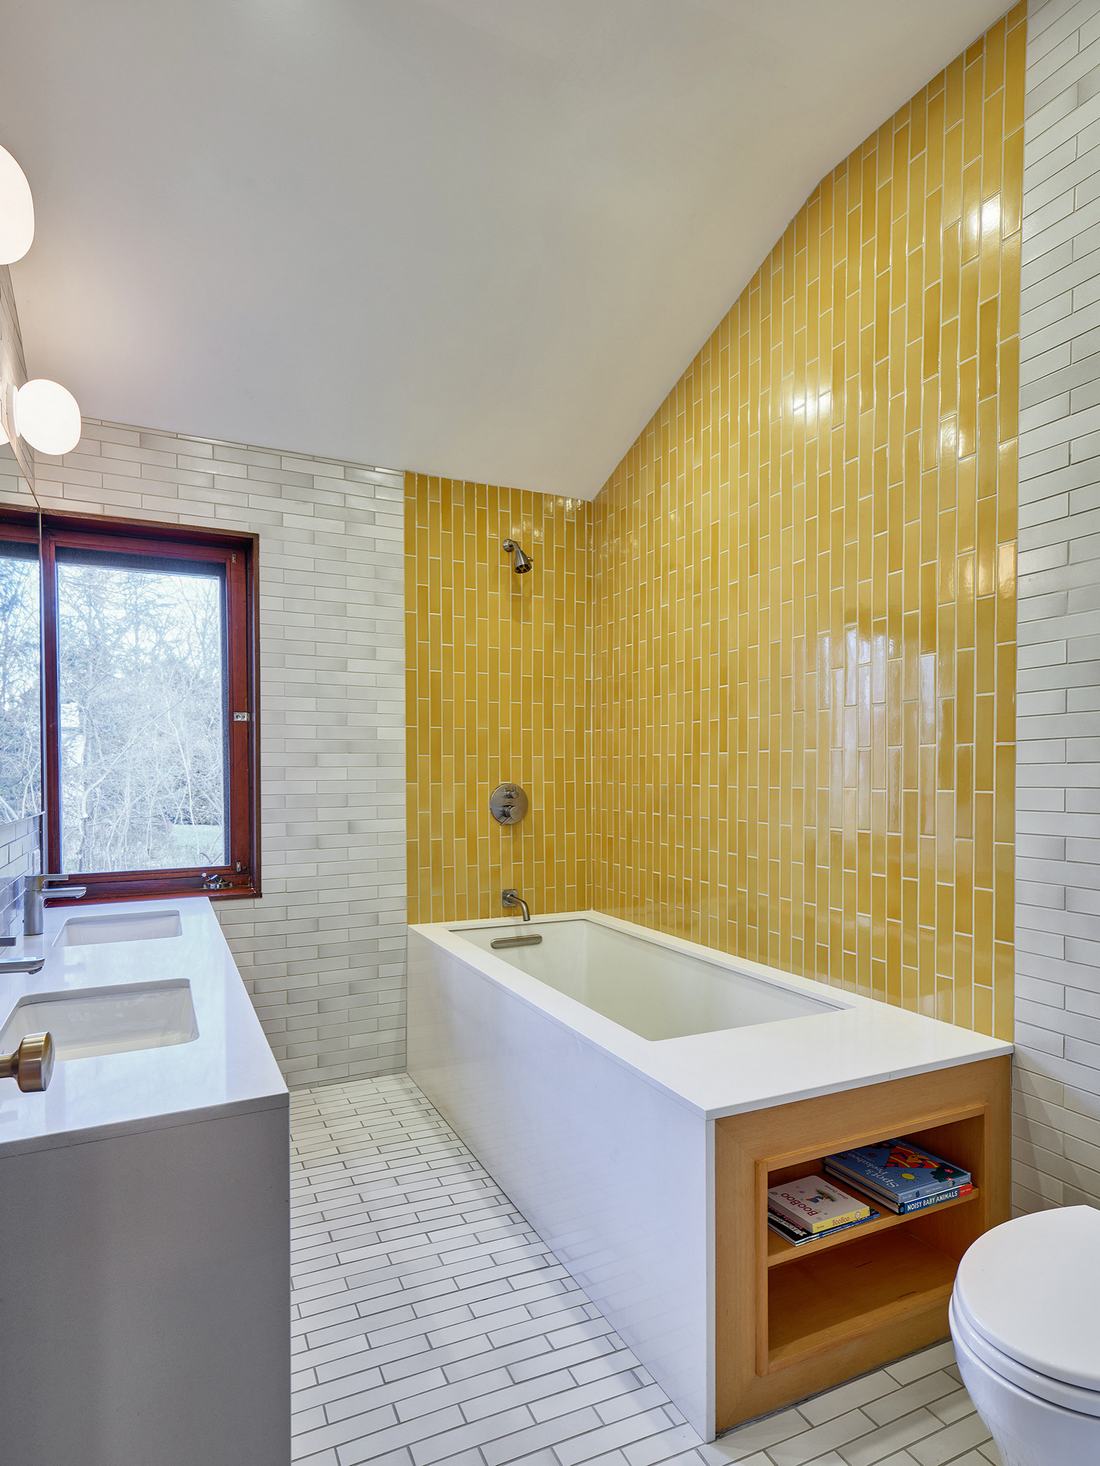 Vàng mù tạt khi được kết hợp với màu xám sẽ trở thành “cặp đôi hoàn hảo” cho bức tường phòng tắm sang chảnh.